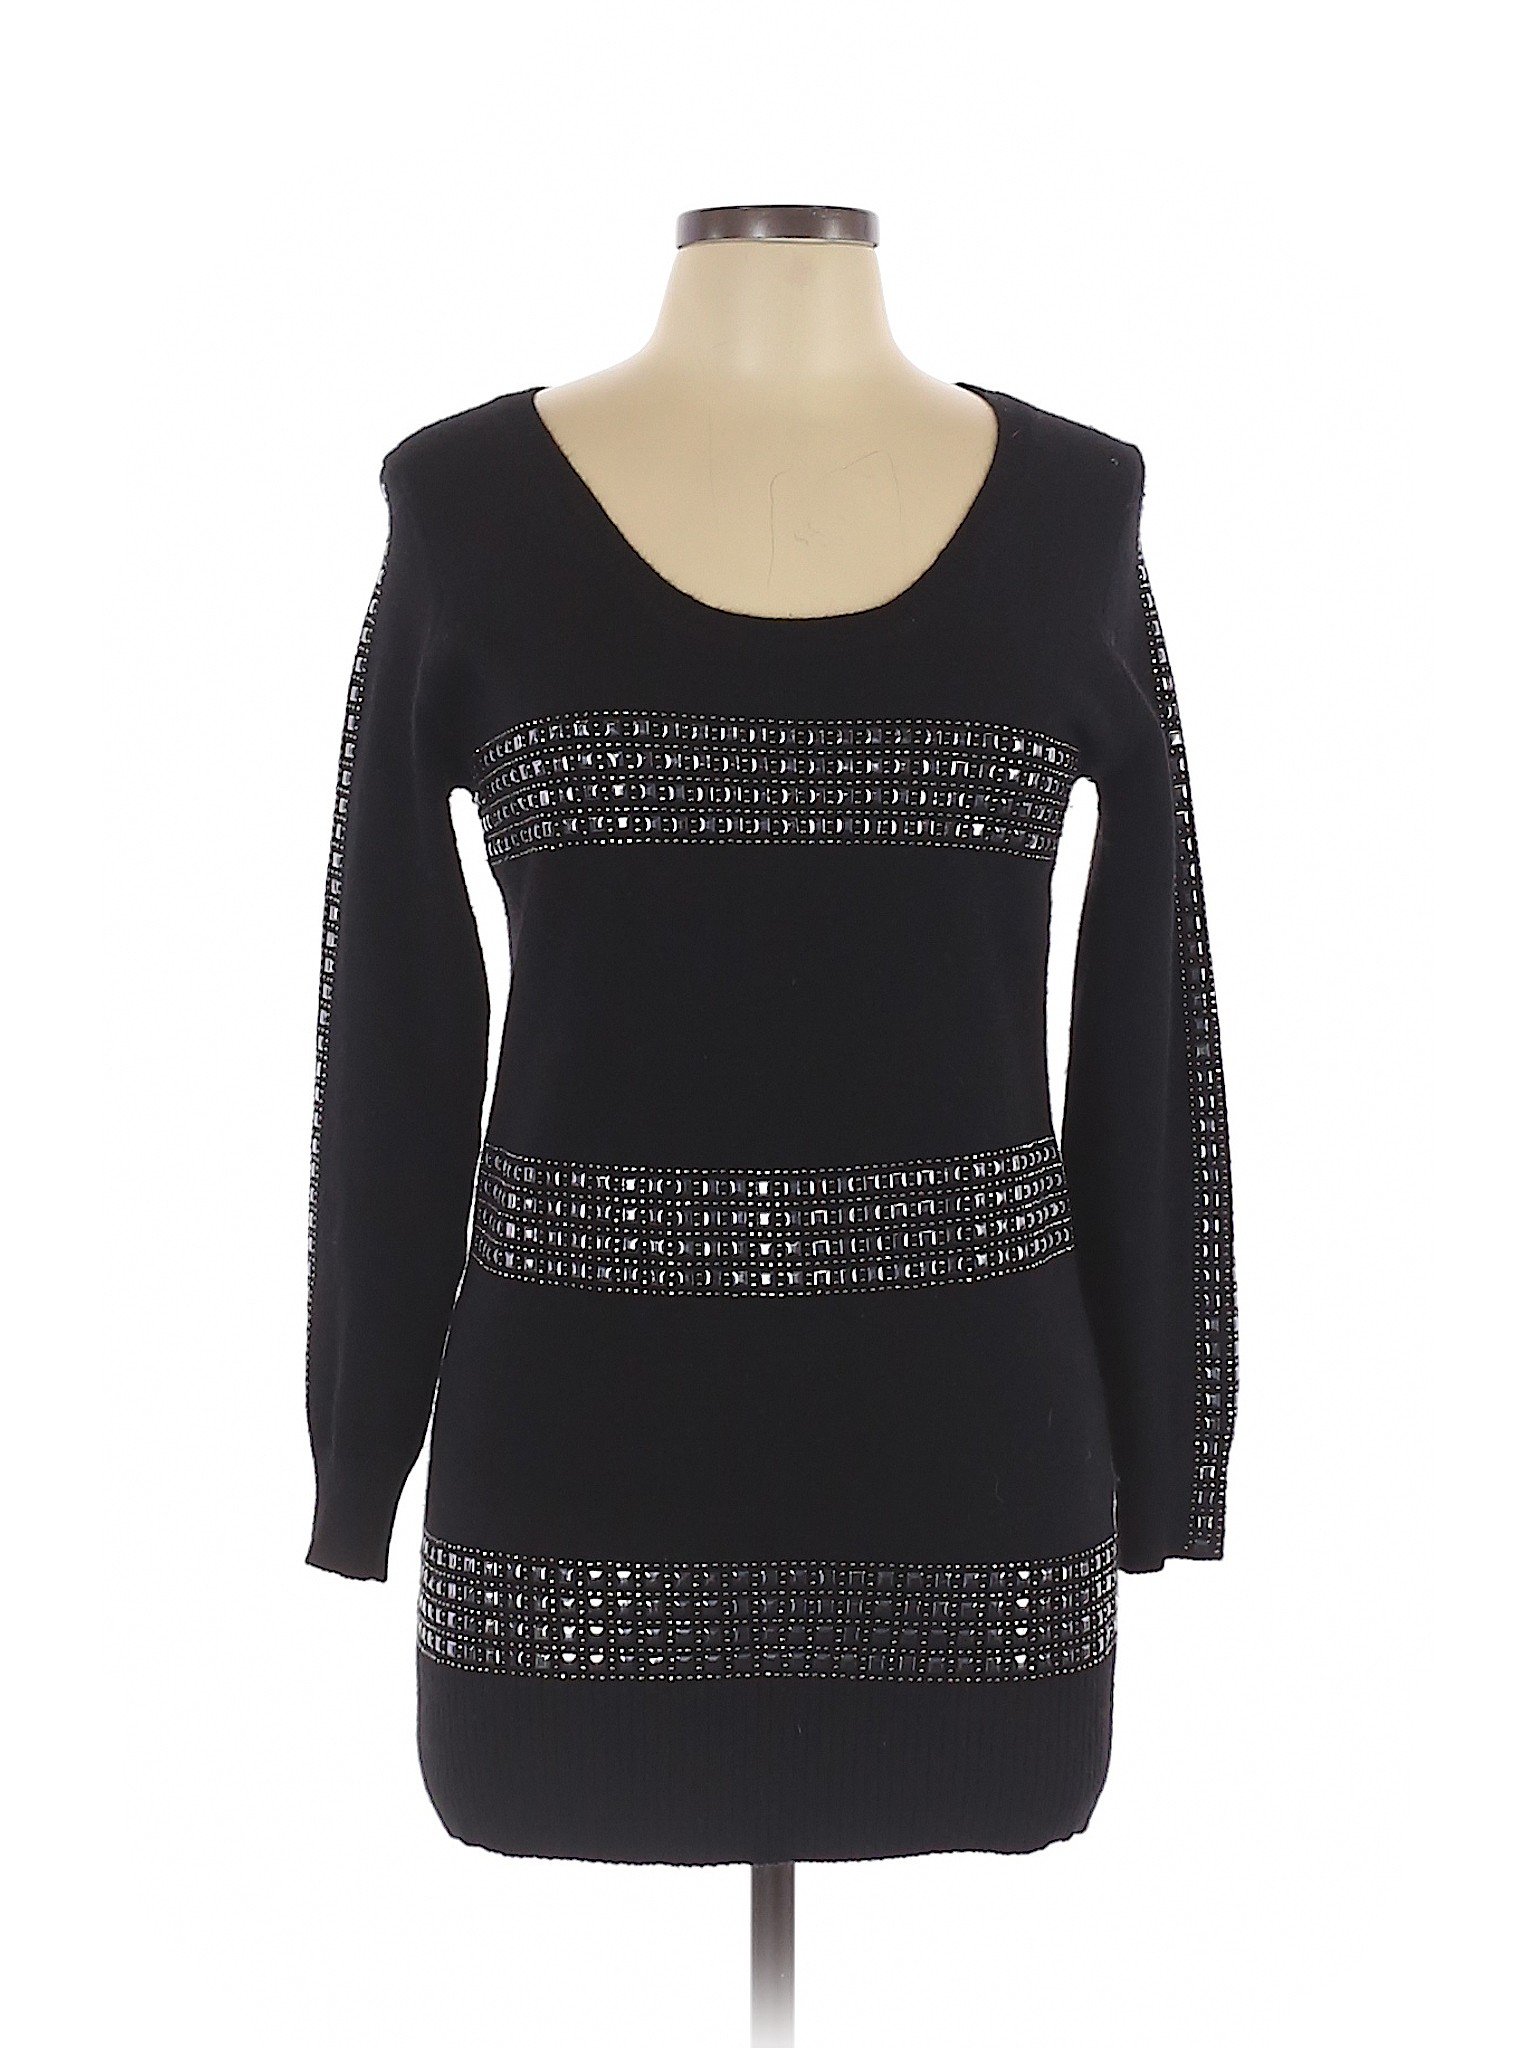 BCBGMAXAZRIA Women Black Pullover Sweater L | eBay